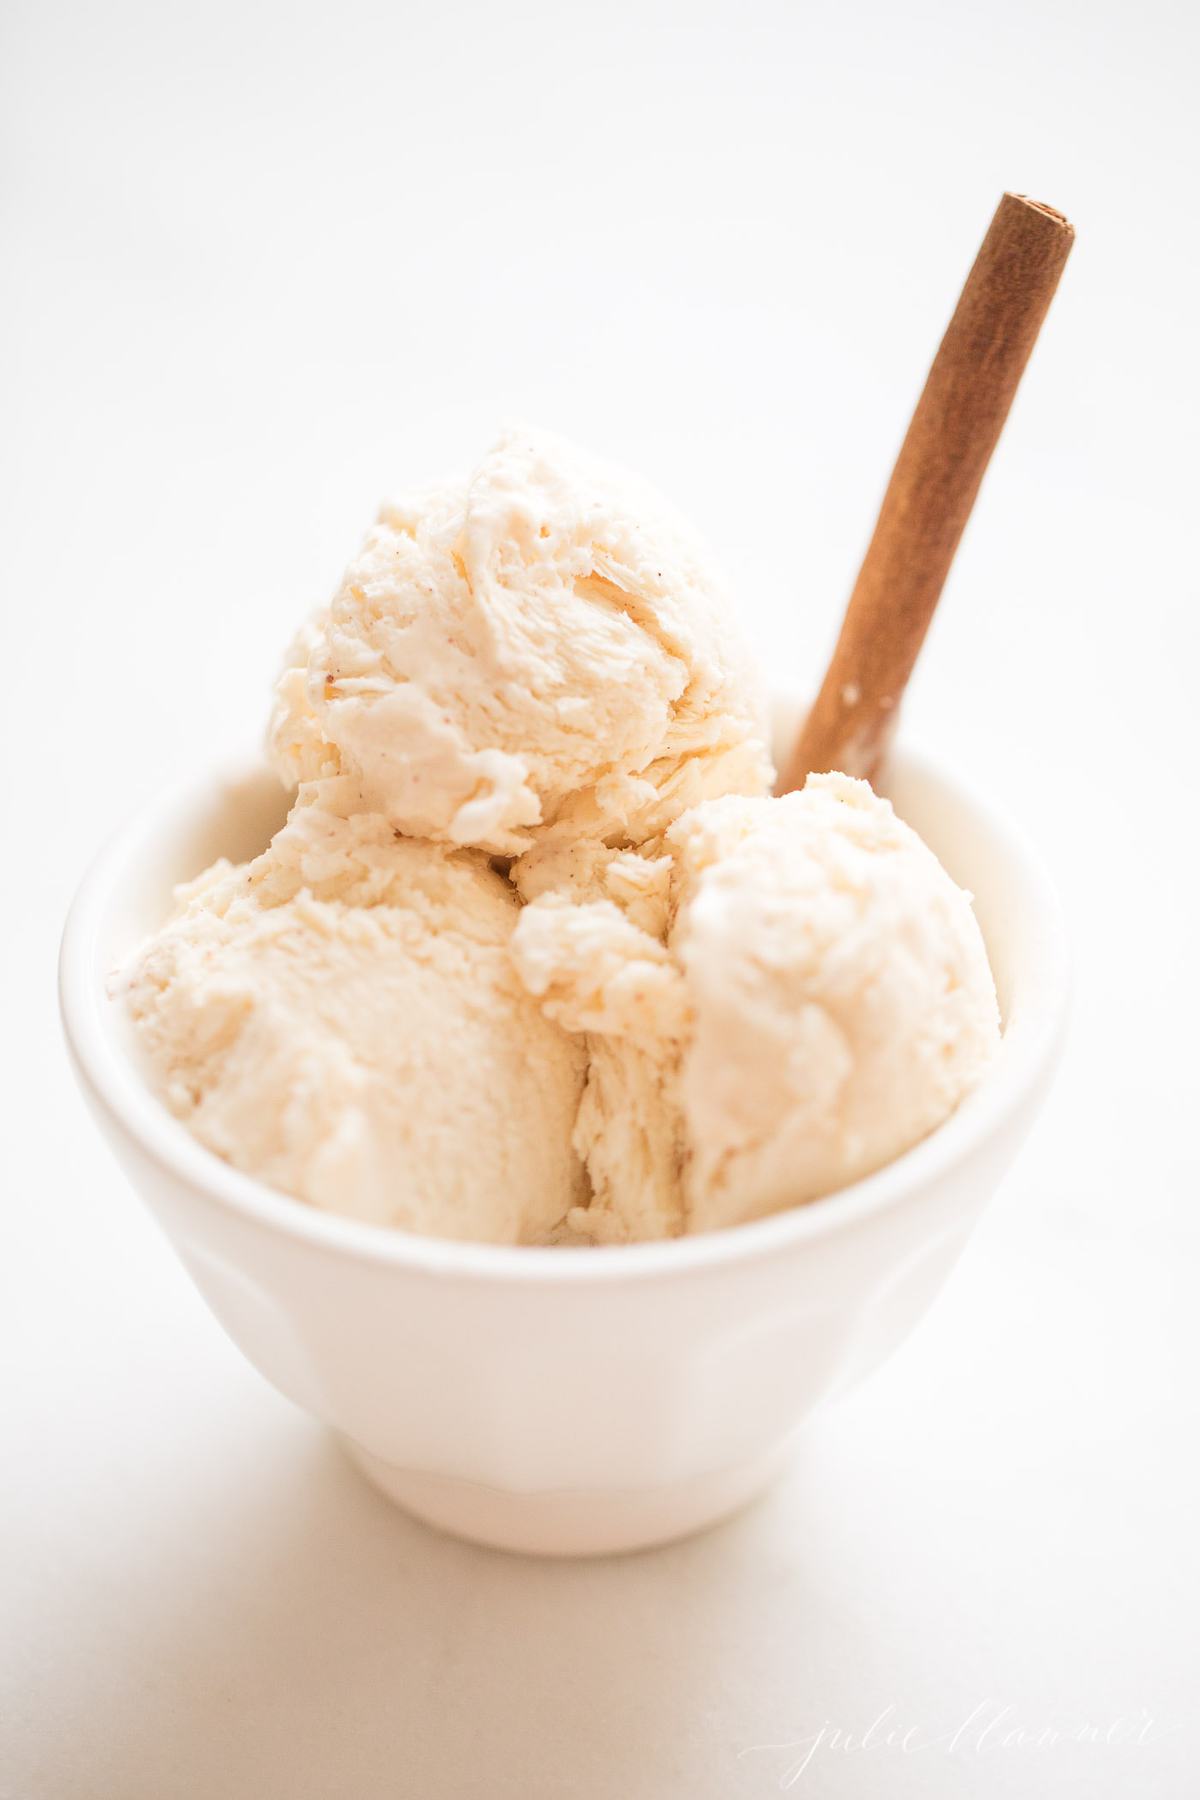 Eggnog冰淇淋在一个小白色碗里供应GydF4y2Ba